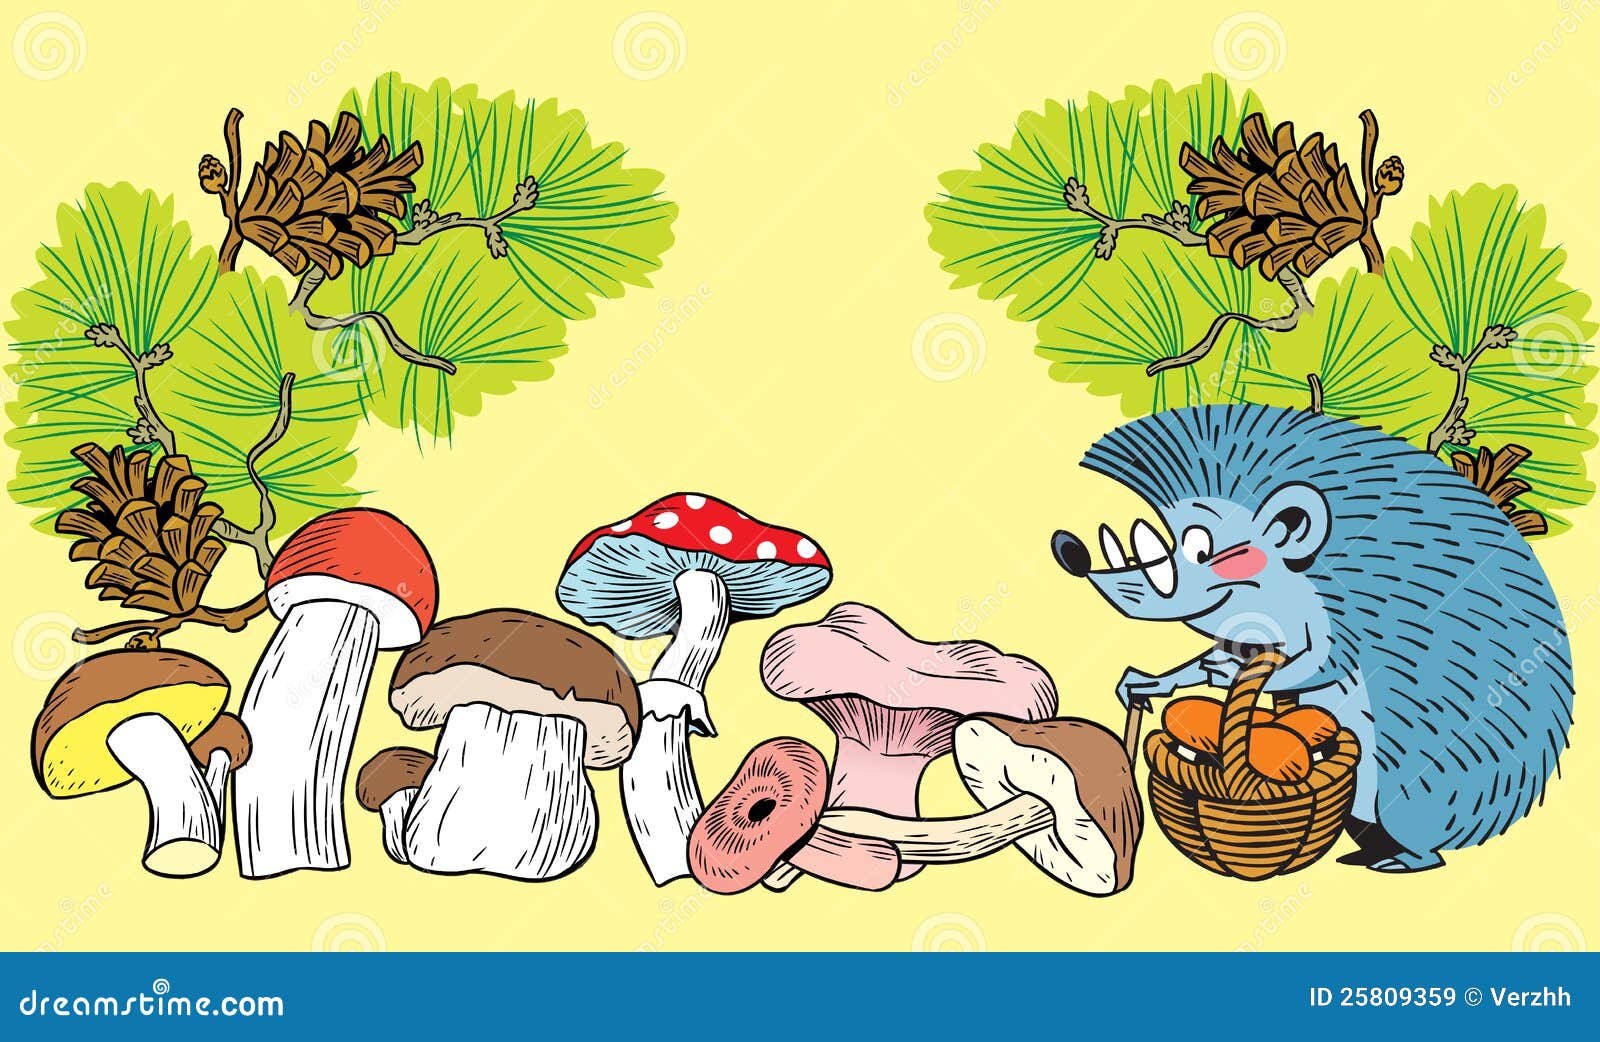 Ежик собирал грибы. Ежик с грибами. Ежик с корзинкой грибов. Еж собирает грибы. Ежик собирает грибы в корзинку.